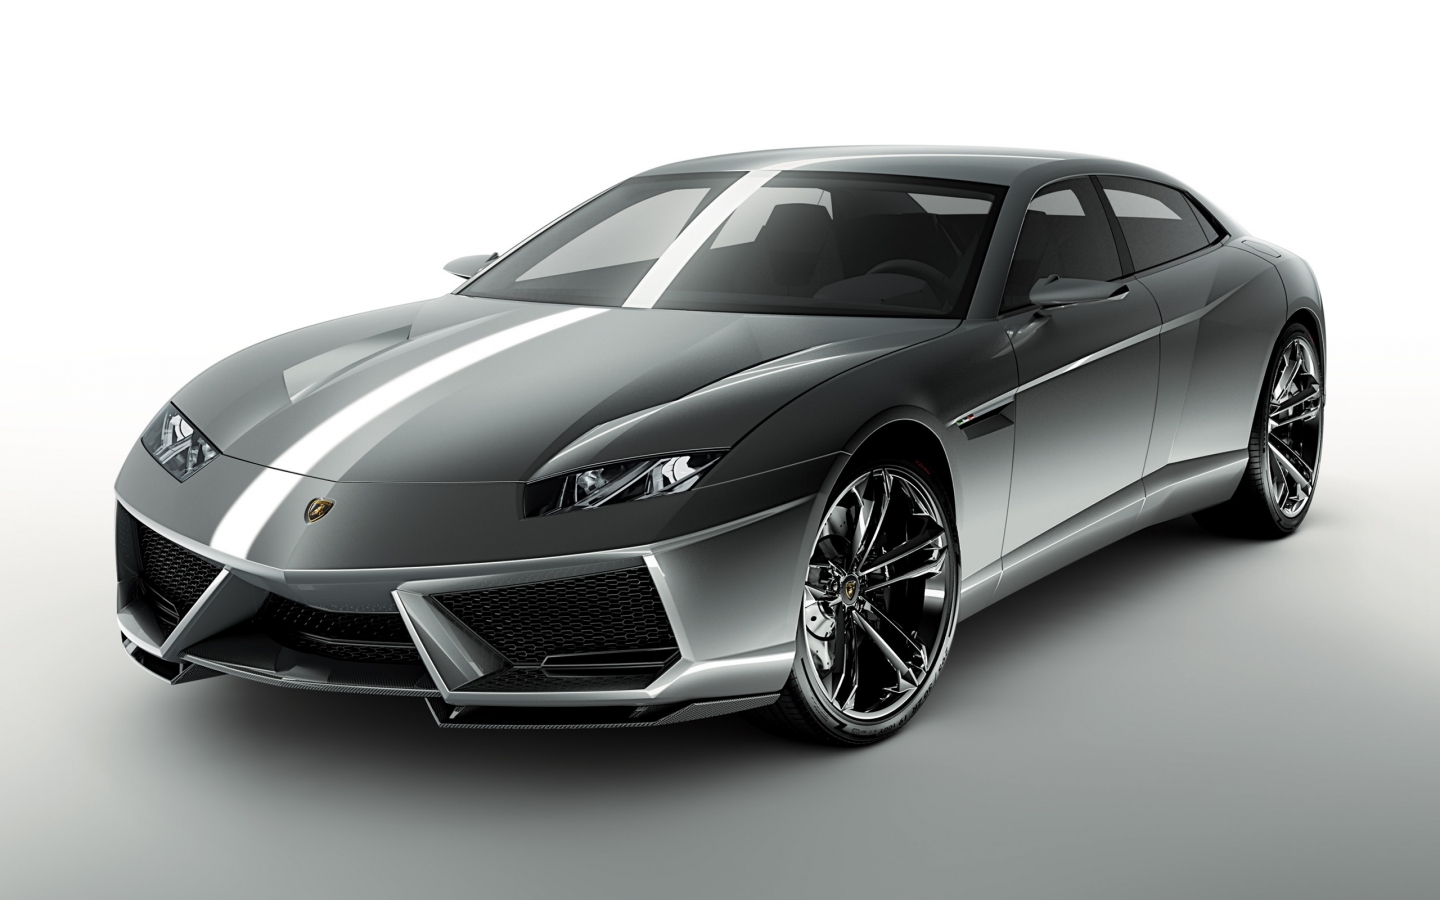 Lamborghini Estoque for 1440 x 900 widescreen resolution